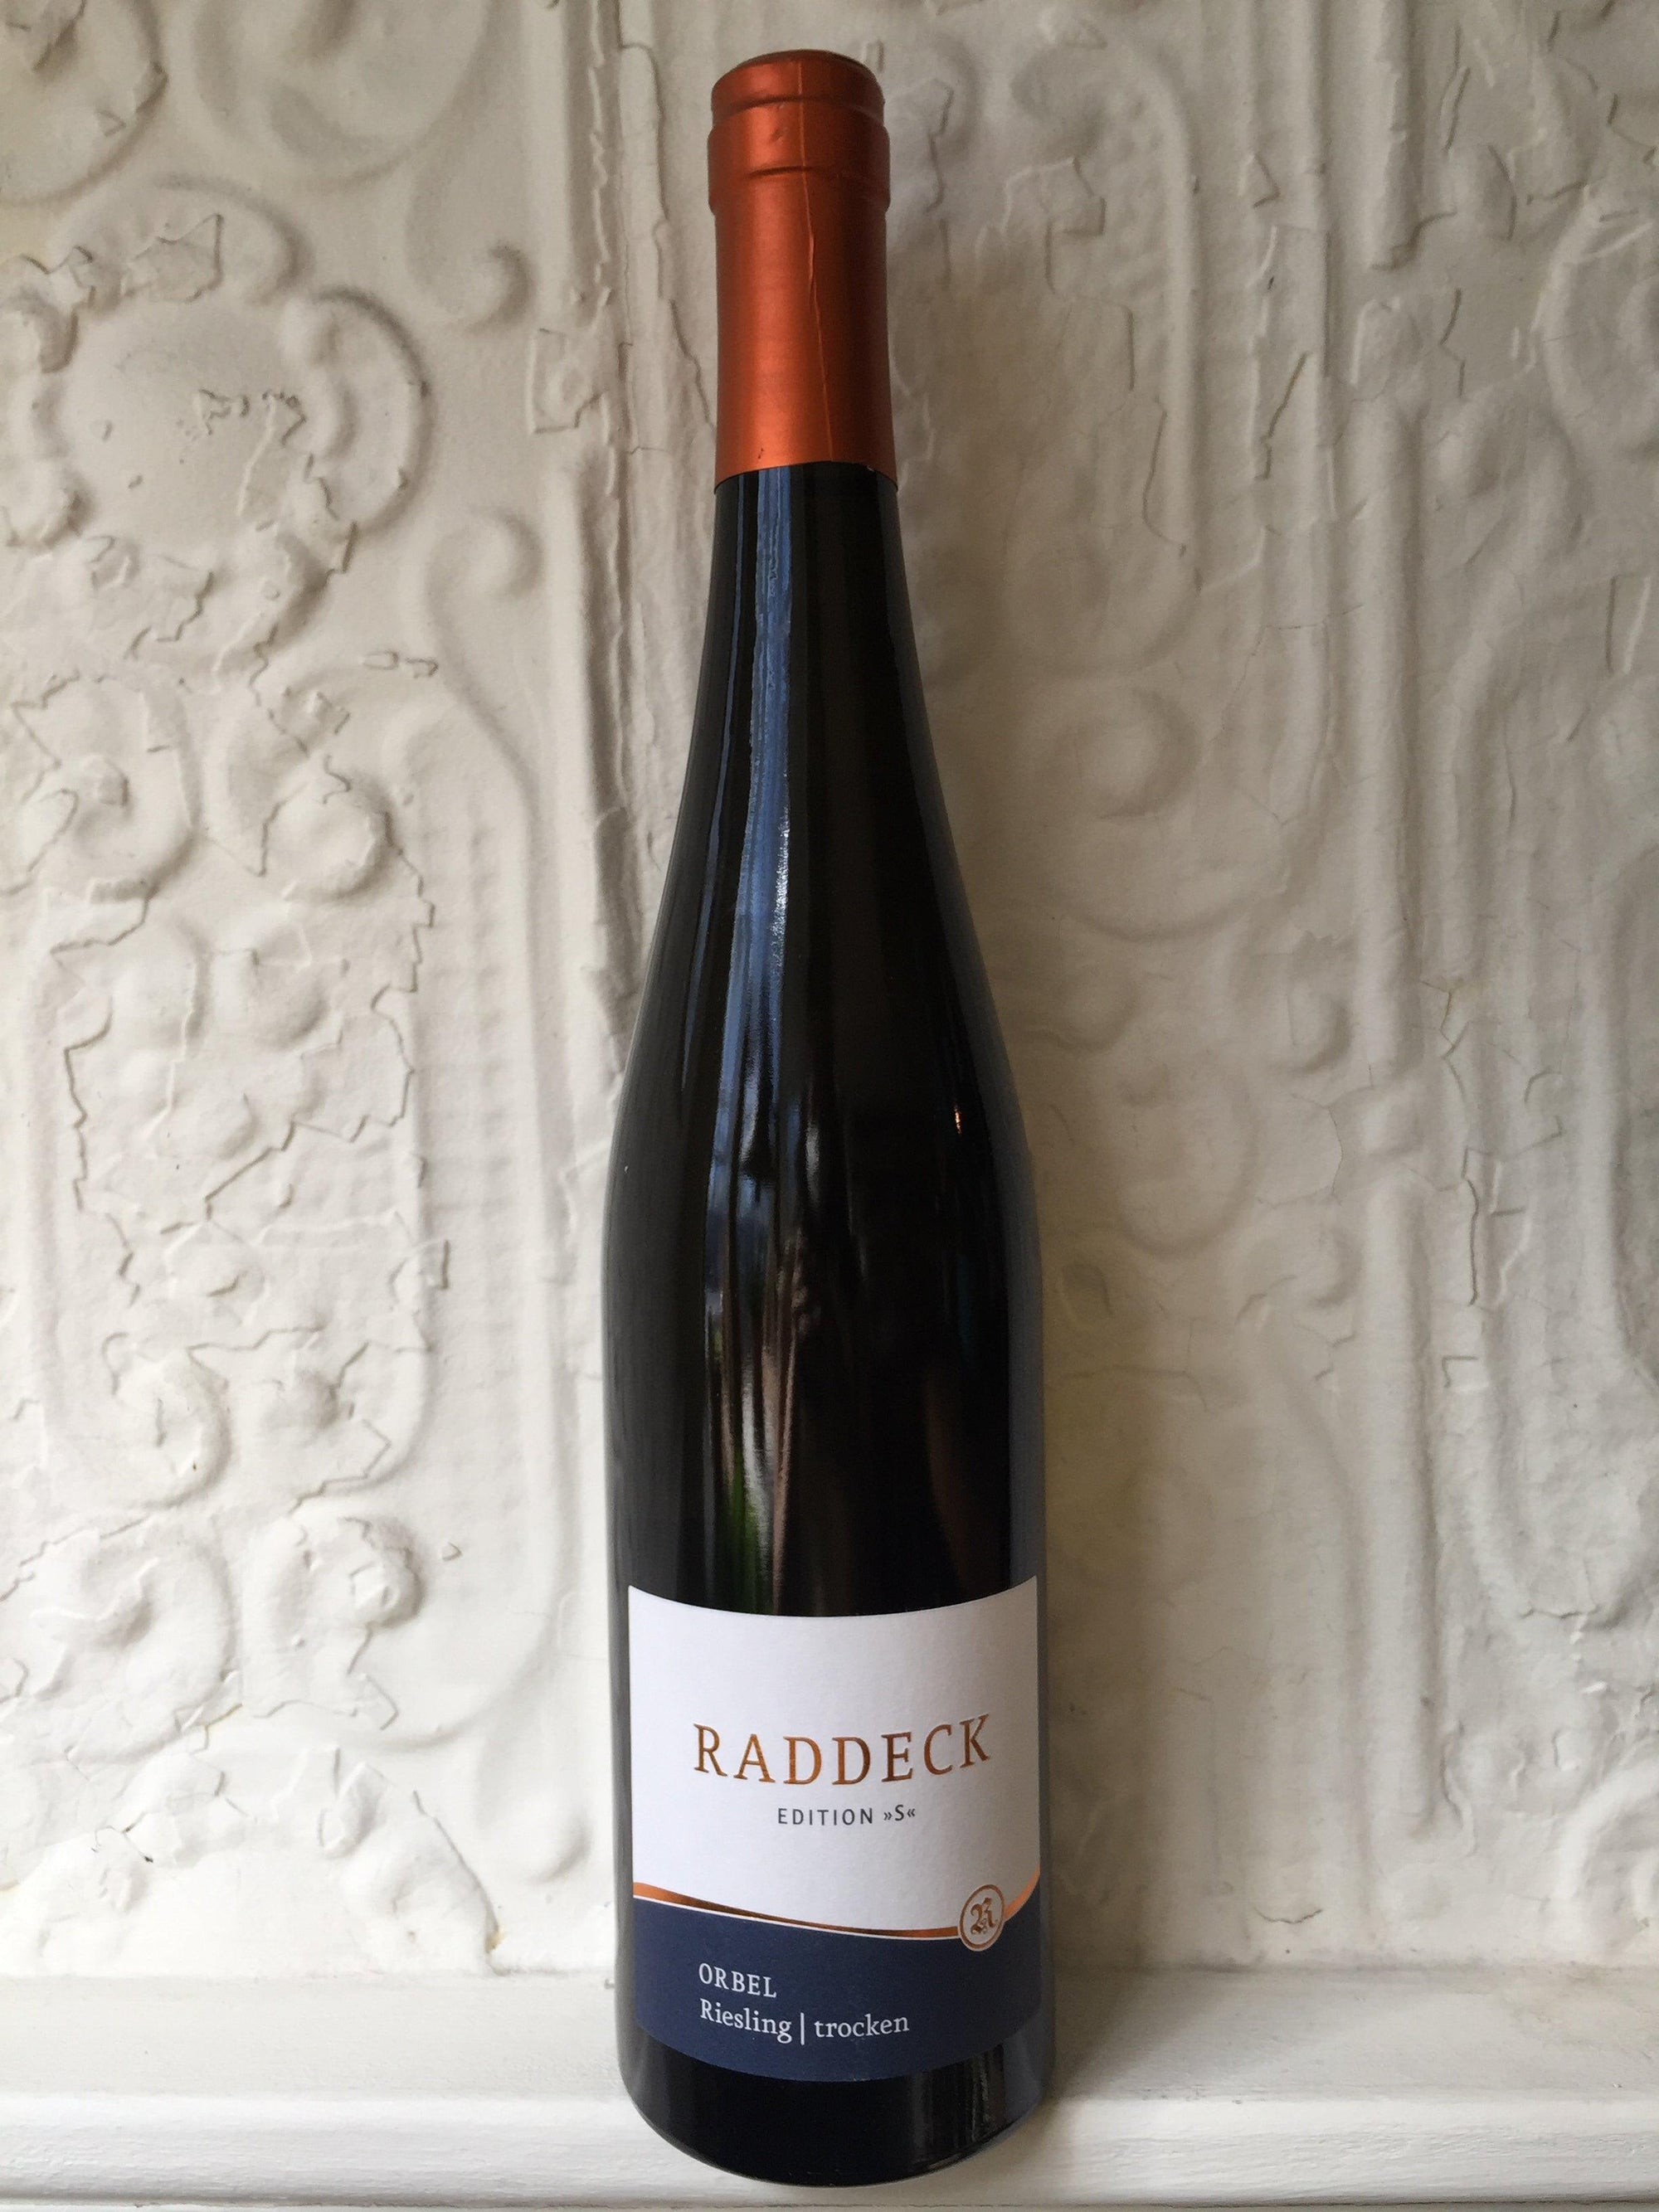 Raddeck Trocken Riesling, Orbel 2017 (Rheinhessen, Germany)-Wine-Bibber & Bell